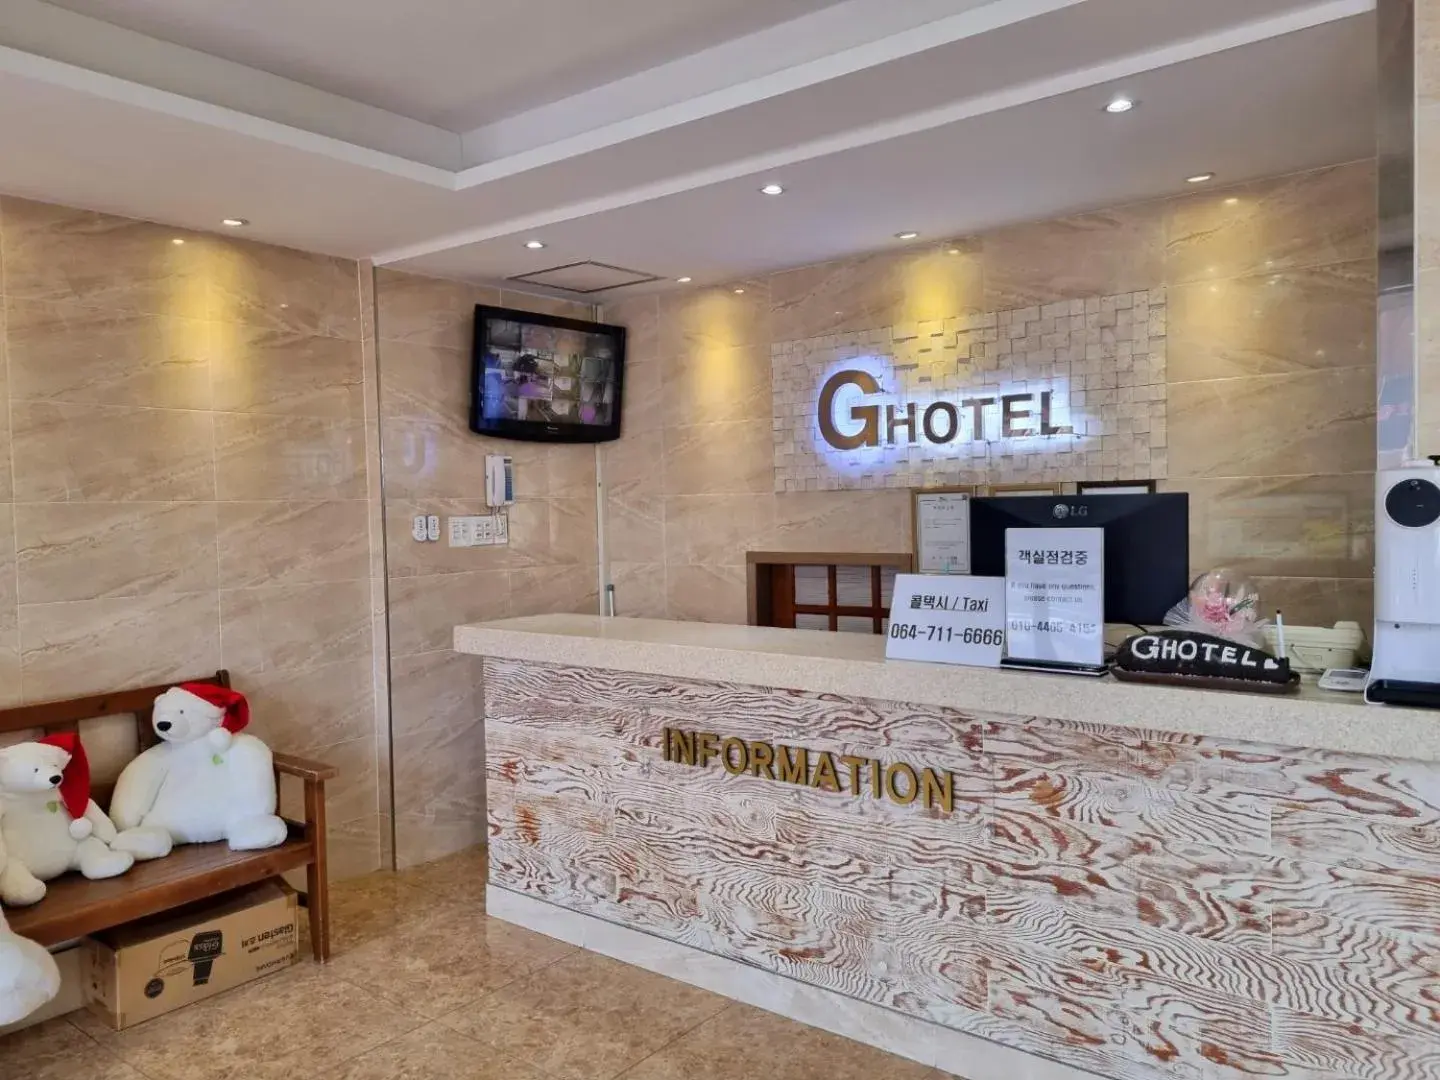 Lobby or reception, Lobby/Reception in Hotel G